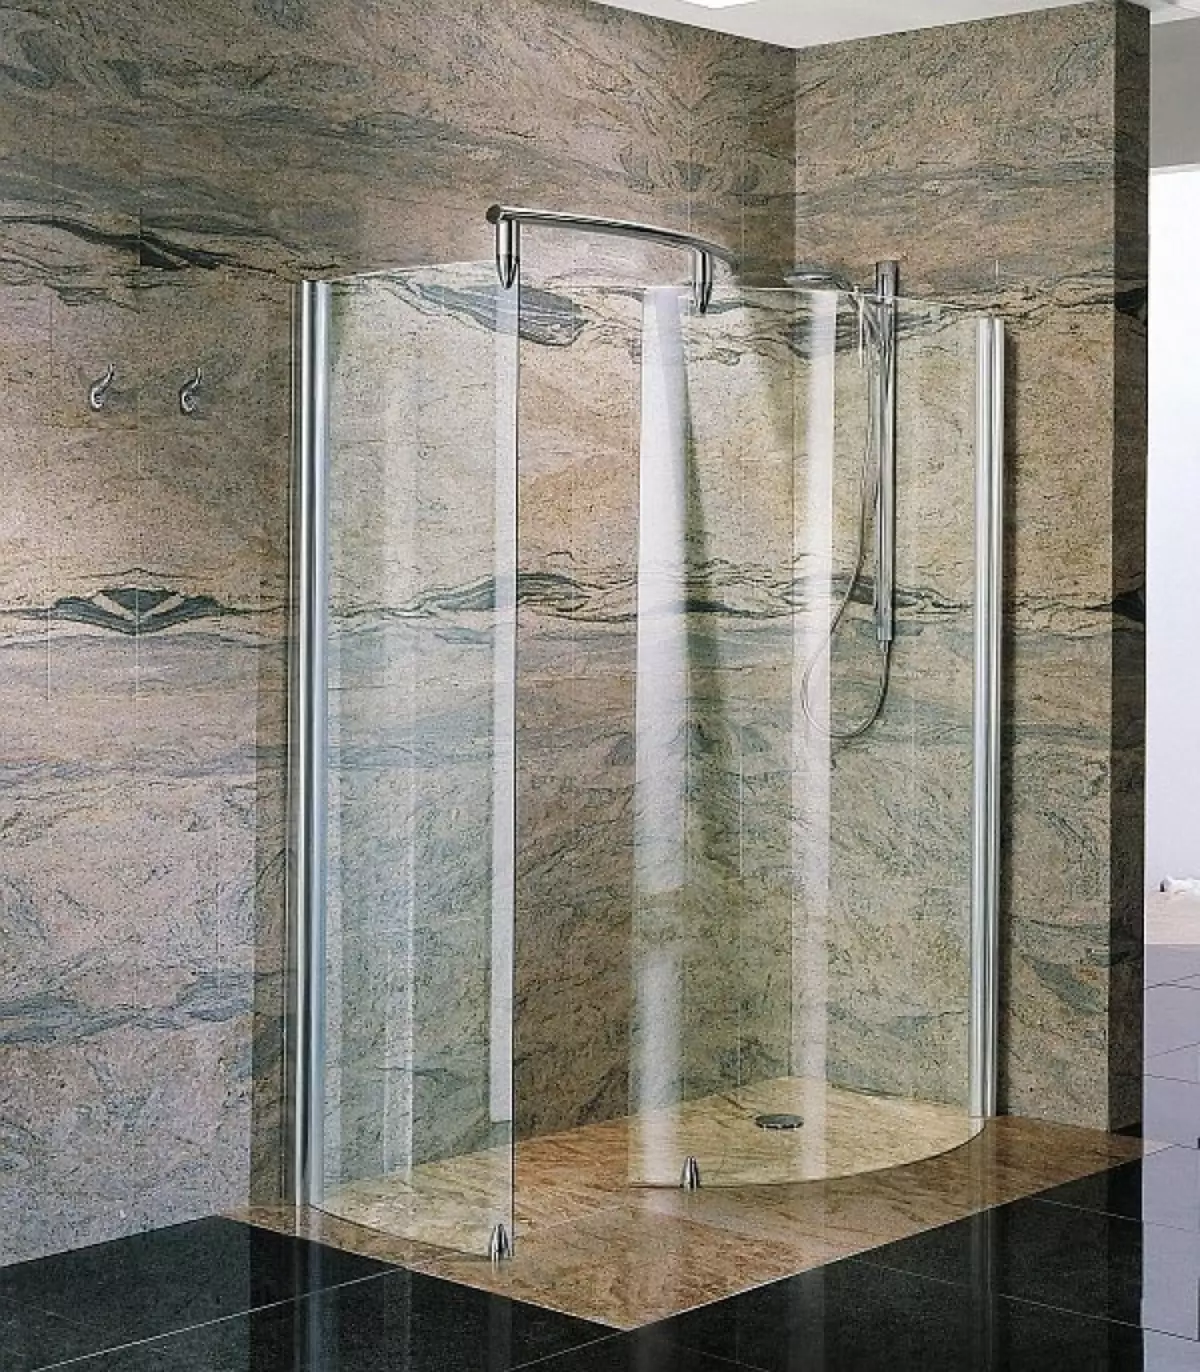 ฝักบัวอาบน้ำในห้องน้ำโดยไม่มีห้องโดยสาร (86 รูป): ตัวเลือกการออกแบบห้องน้ำพร้อมฝักบัวอาบน้ำที่ไม่มีพาเลทและห้องโดยสารกระเบื้องโครงการ 21384_56